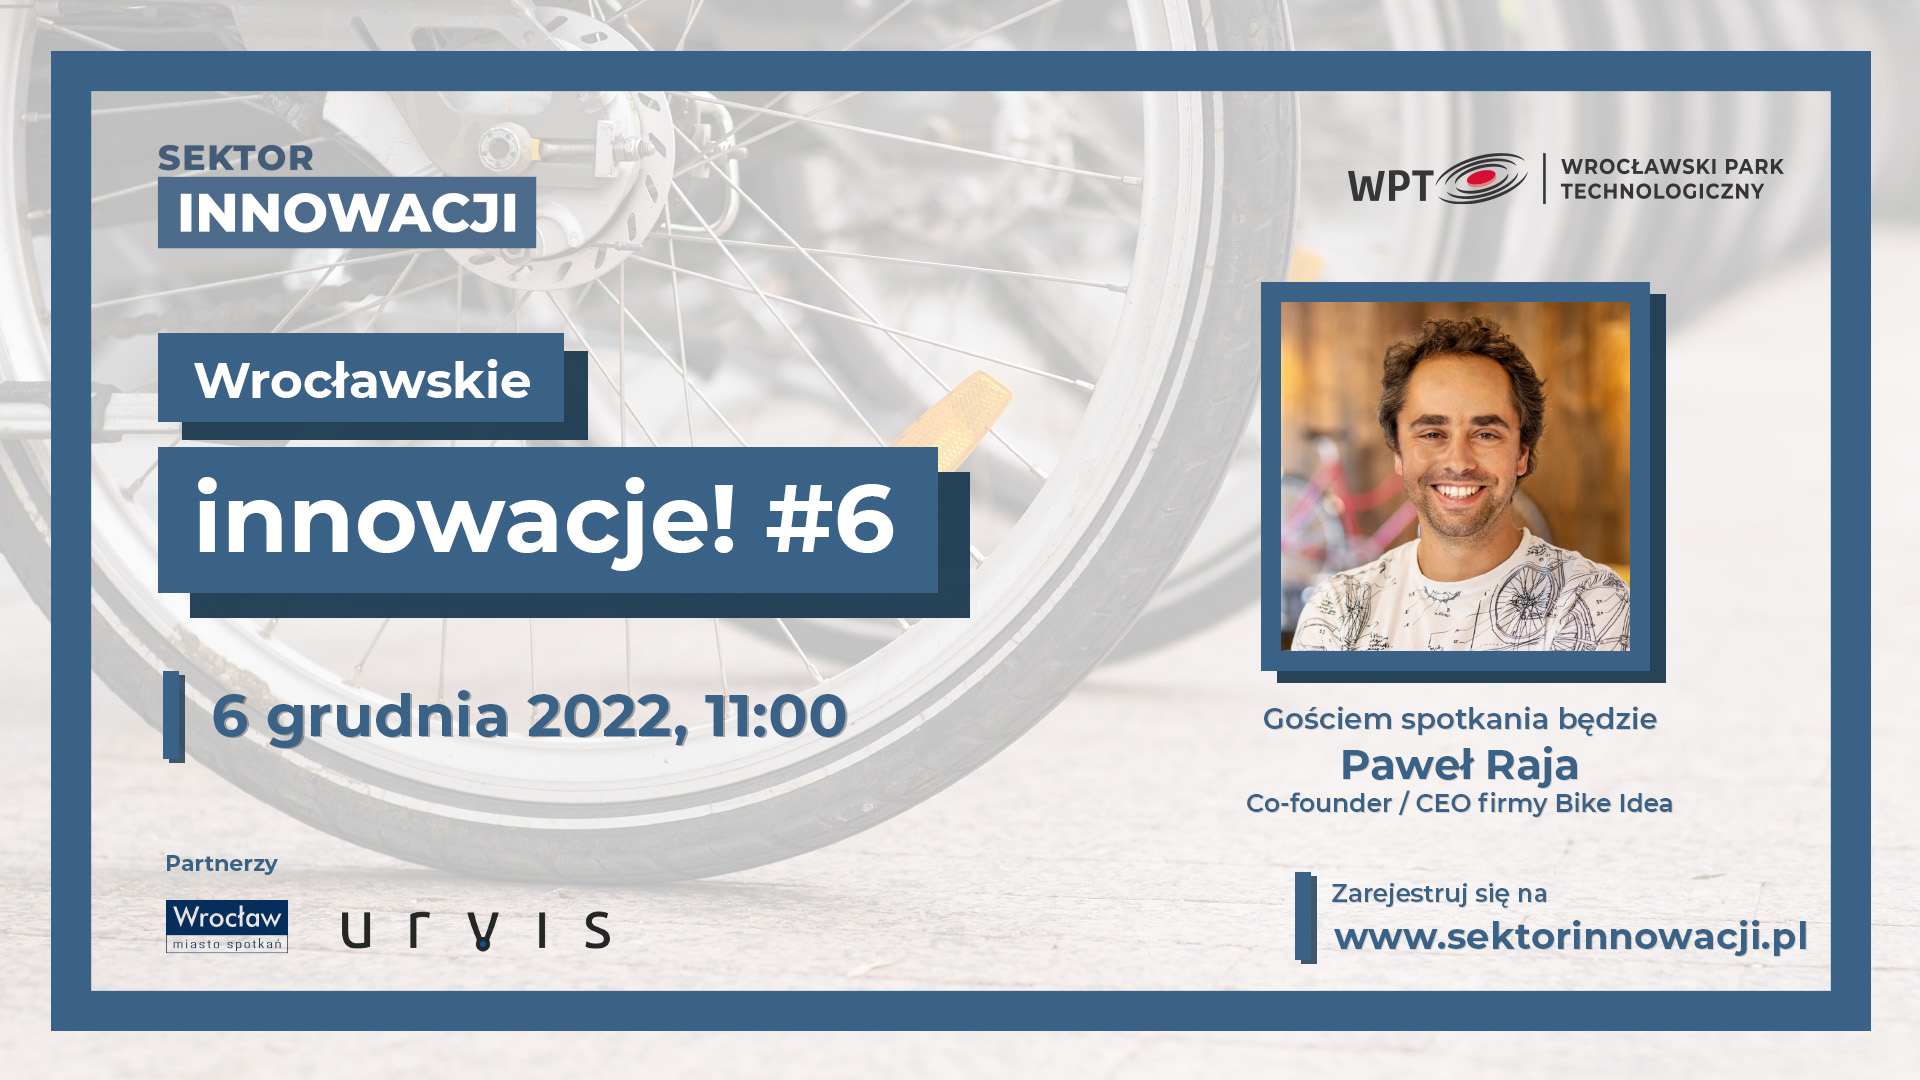 Wrocławskie innowacje #6: URVIS, czyli elektryczny rower cargo tworzony w całości w Polsce